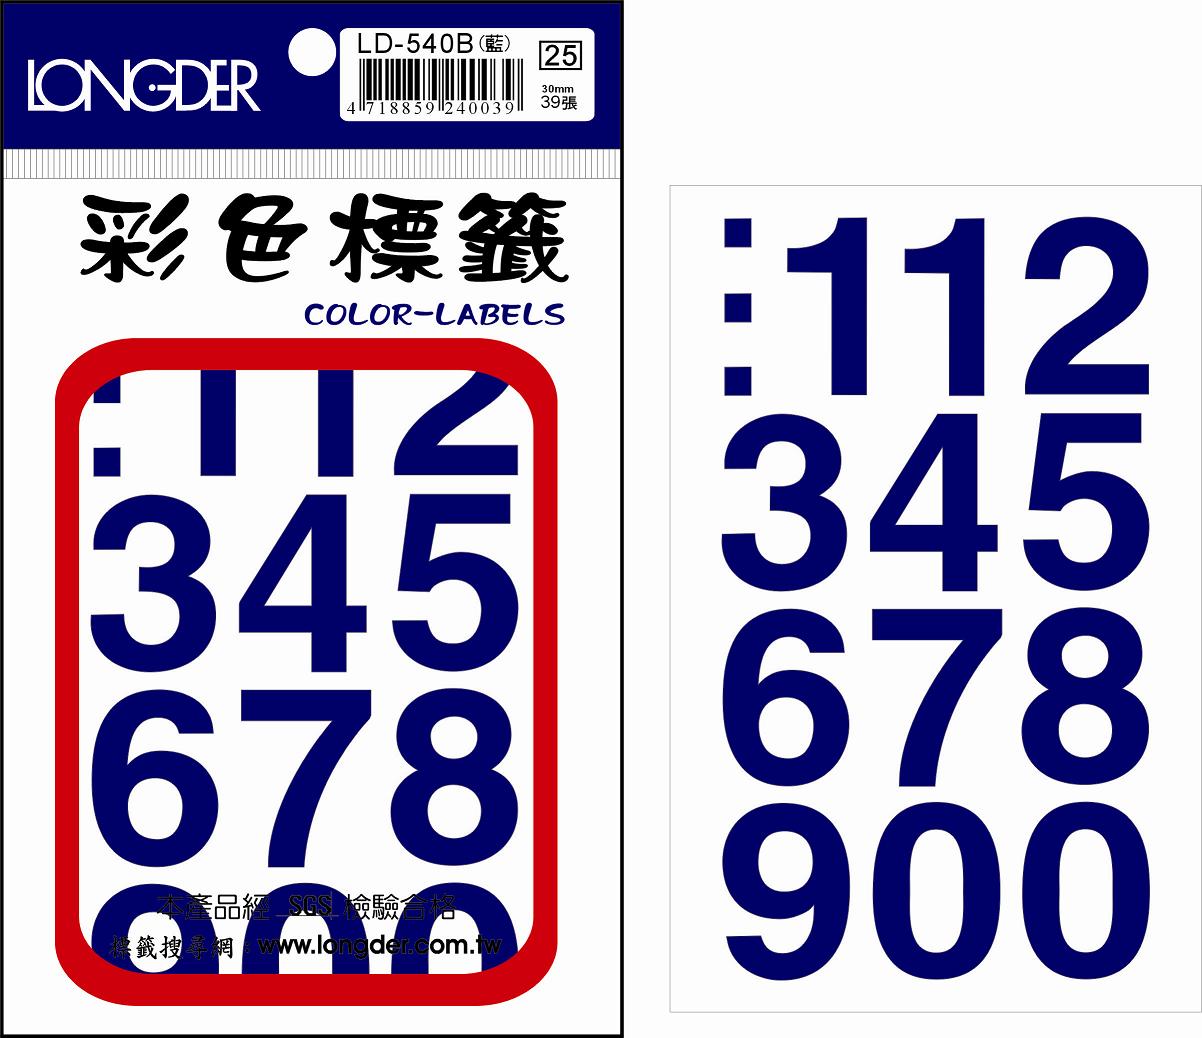 龍德 彩色數字標籤 LD-540B (30mm) /包